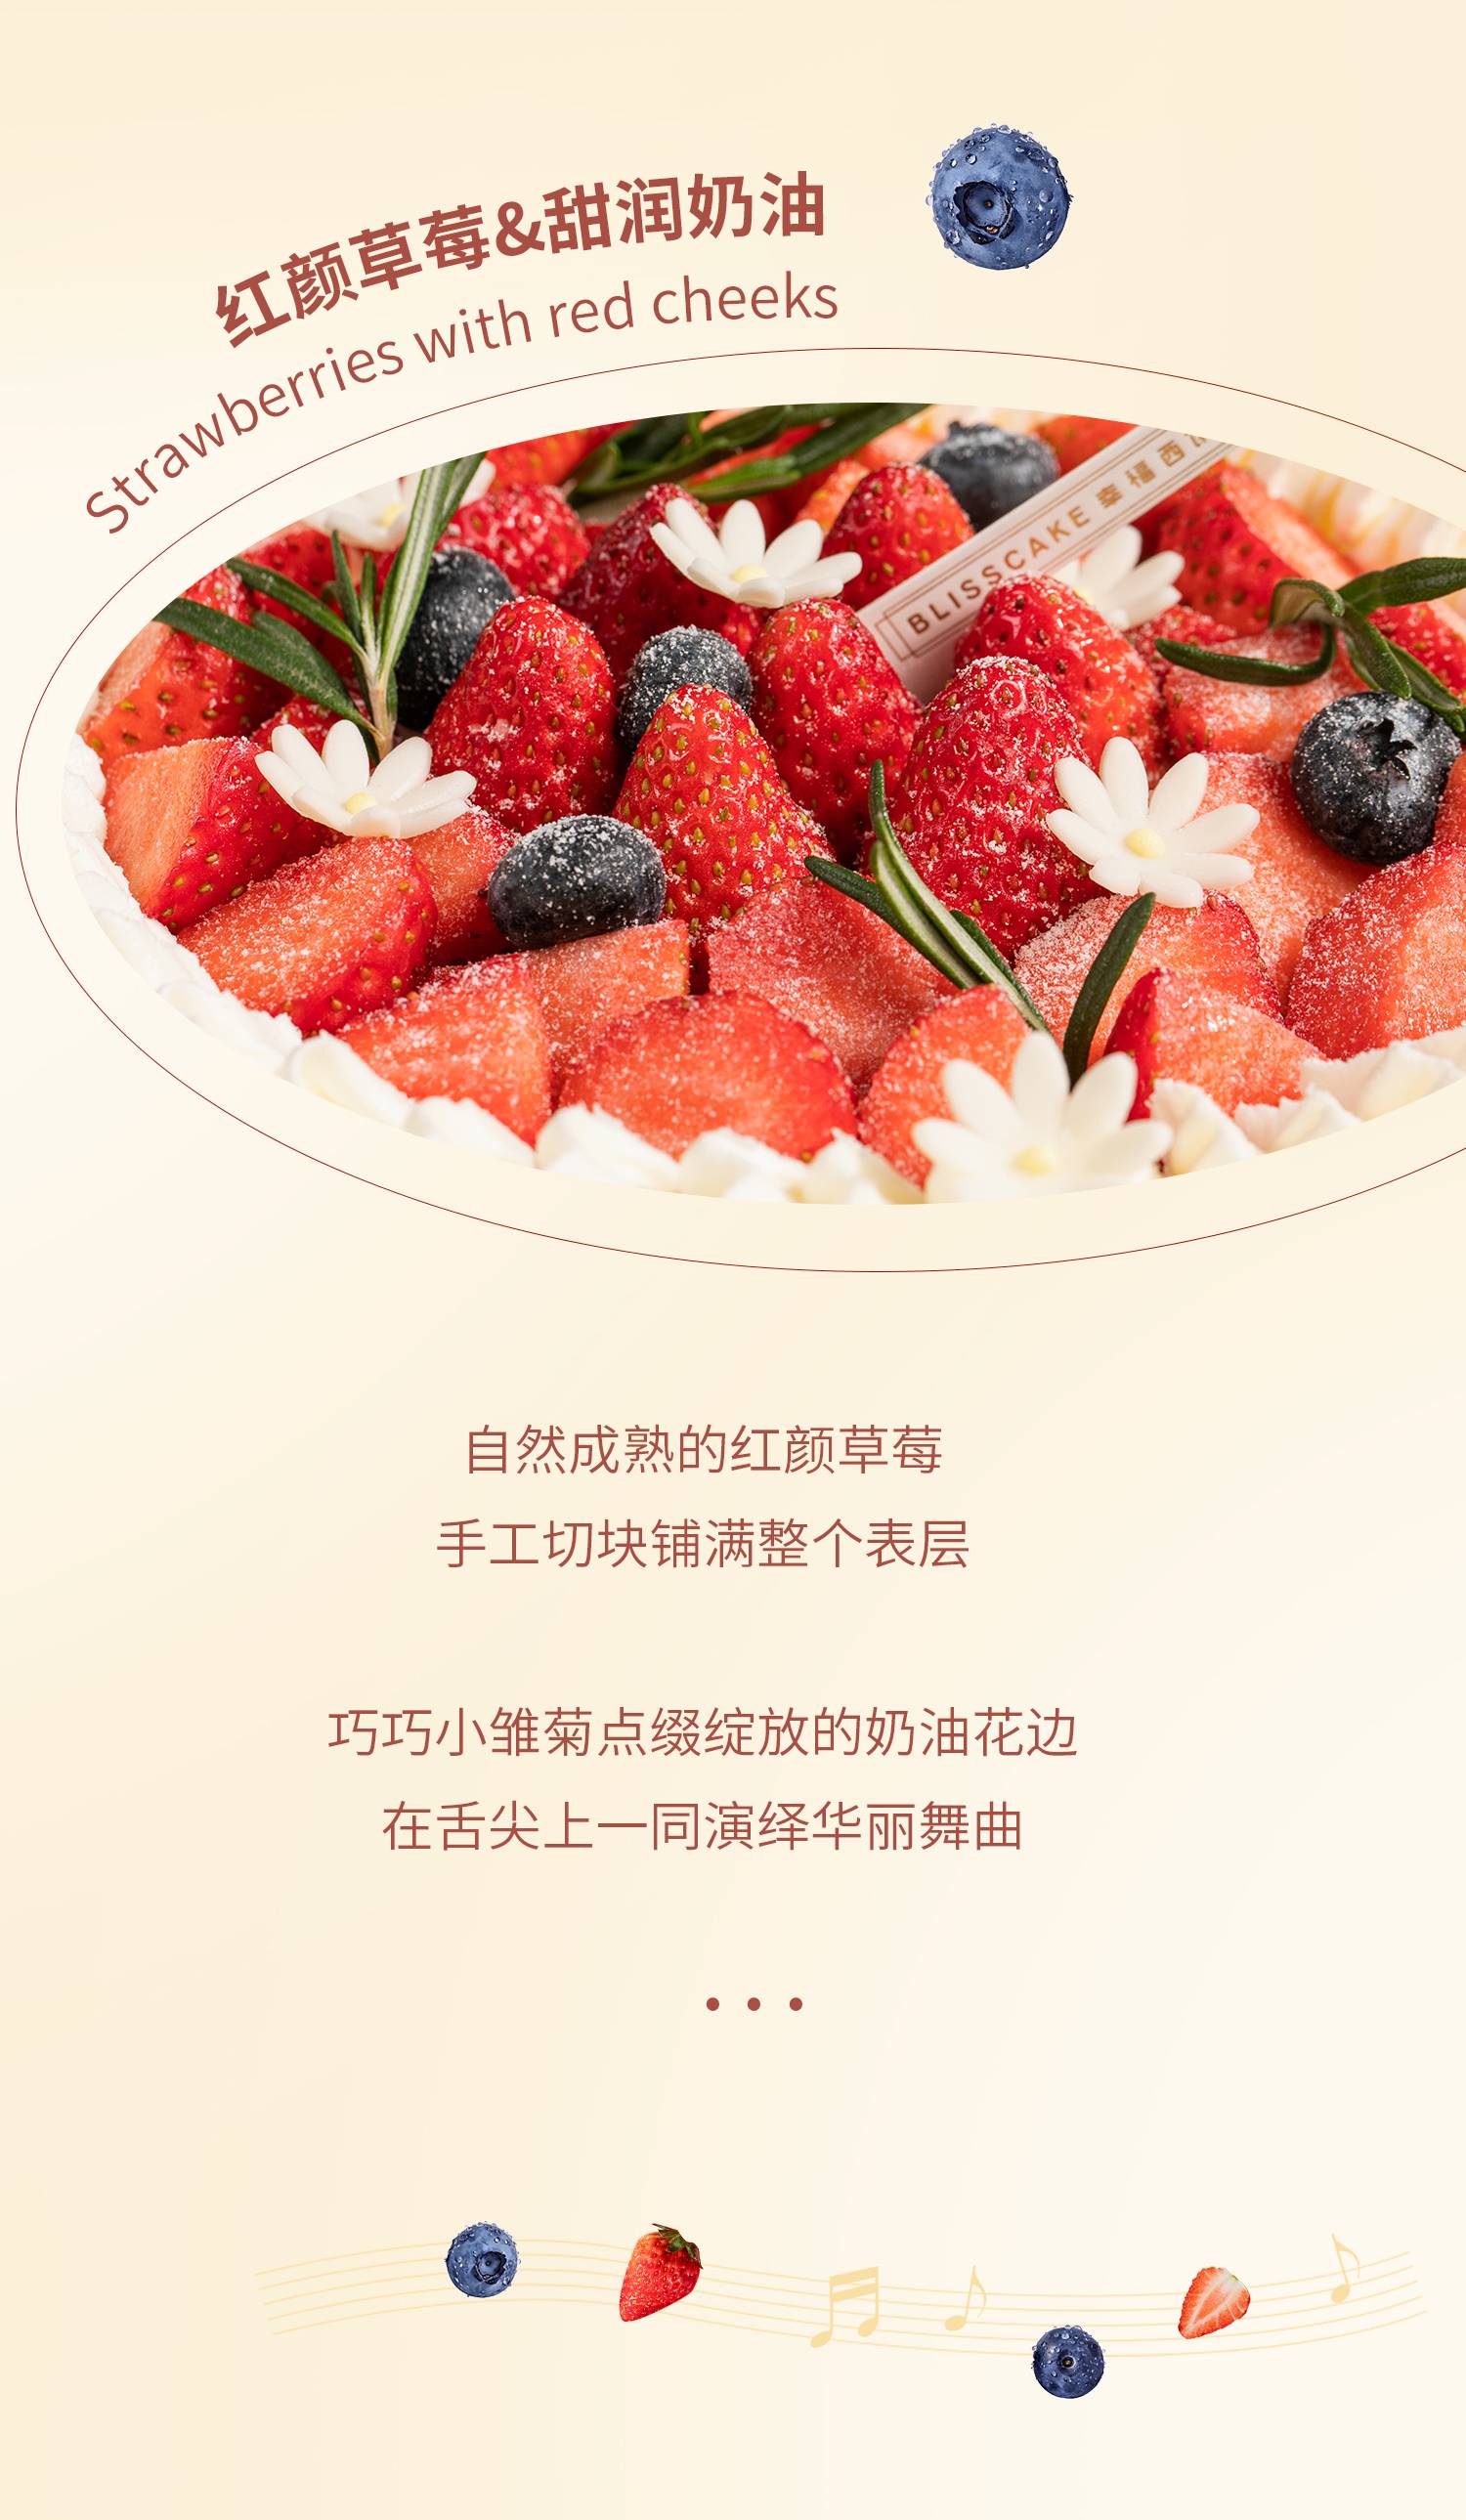 莓莓圆舞曲（红颜草莓）_幸福西饼蛋糕预定_加盟幸福西饼_深圳幸福西饼官方网站